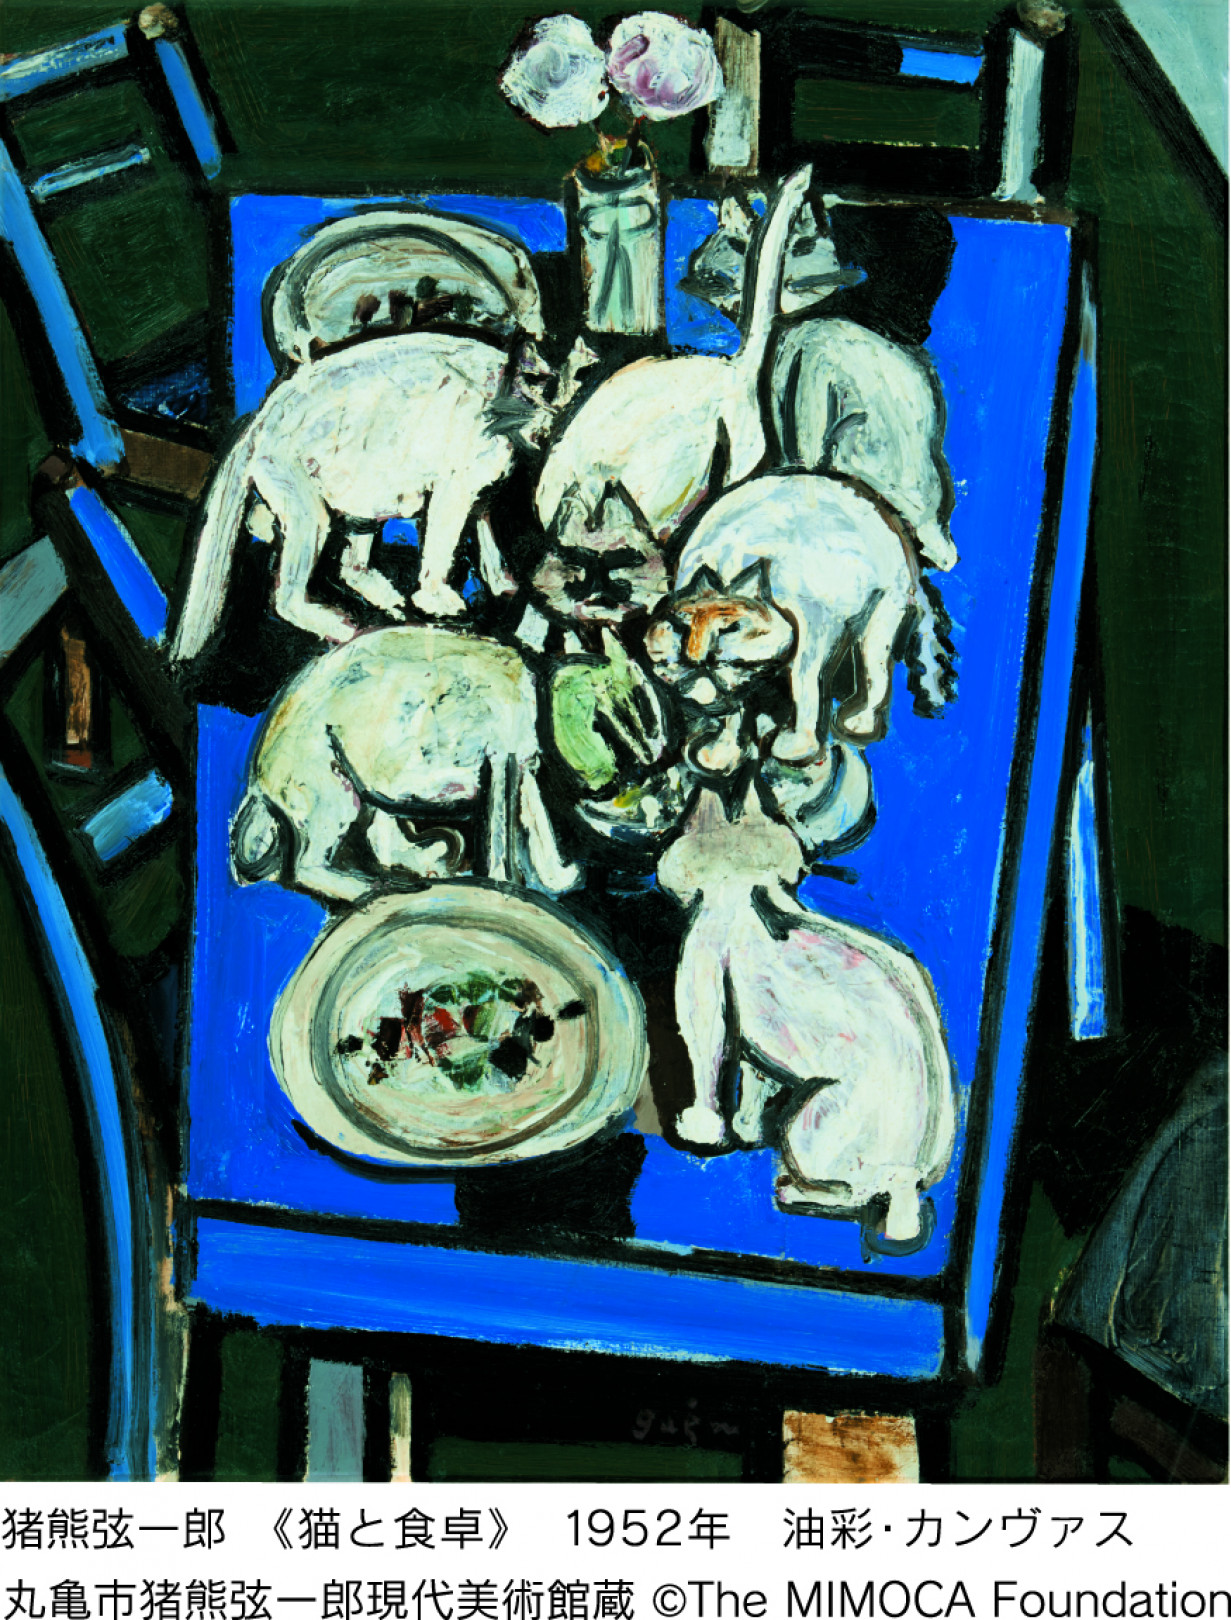 猪熊弦一郎 《猫と食卓》 1952年 油彩・カンヴァス 丸亀市猪熊弦一郎現代美術館蔵 ©The MIMOCA Foundation